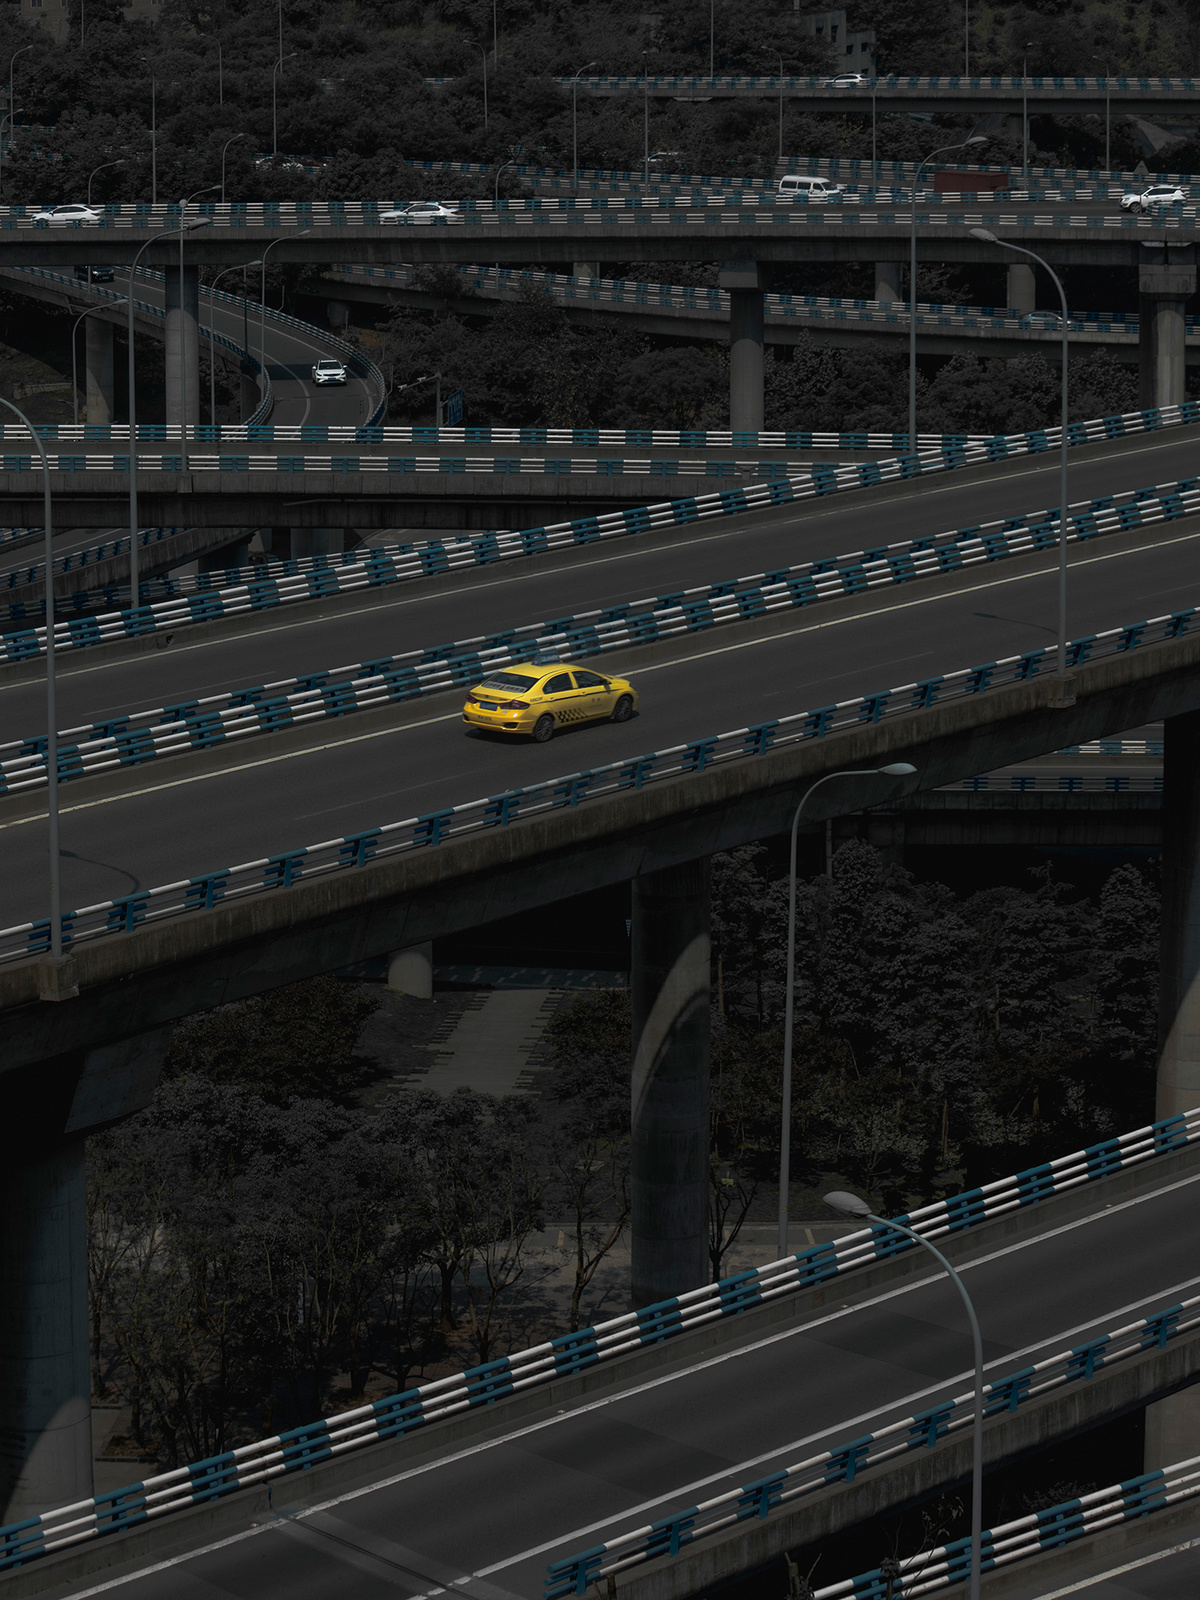 一辆黄色出租车在高速公路上越过一座桥 其他车辆在桥下行驶。